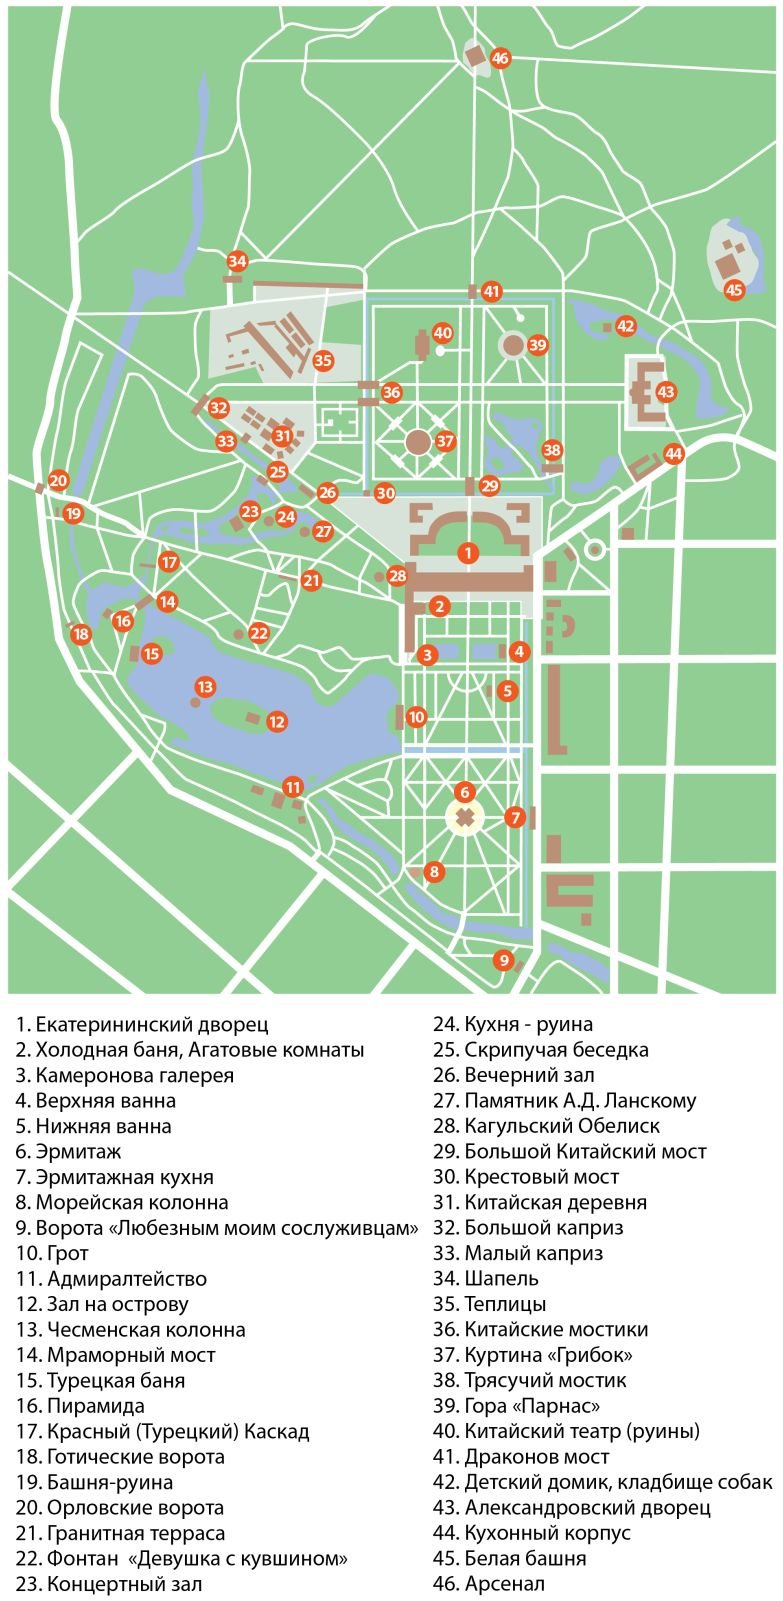 Об александровском парке в царском селе: карта с достопримечательностями